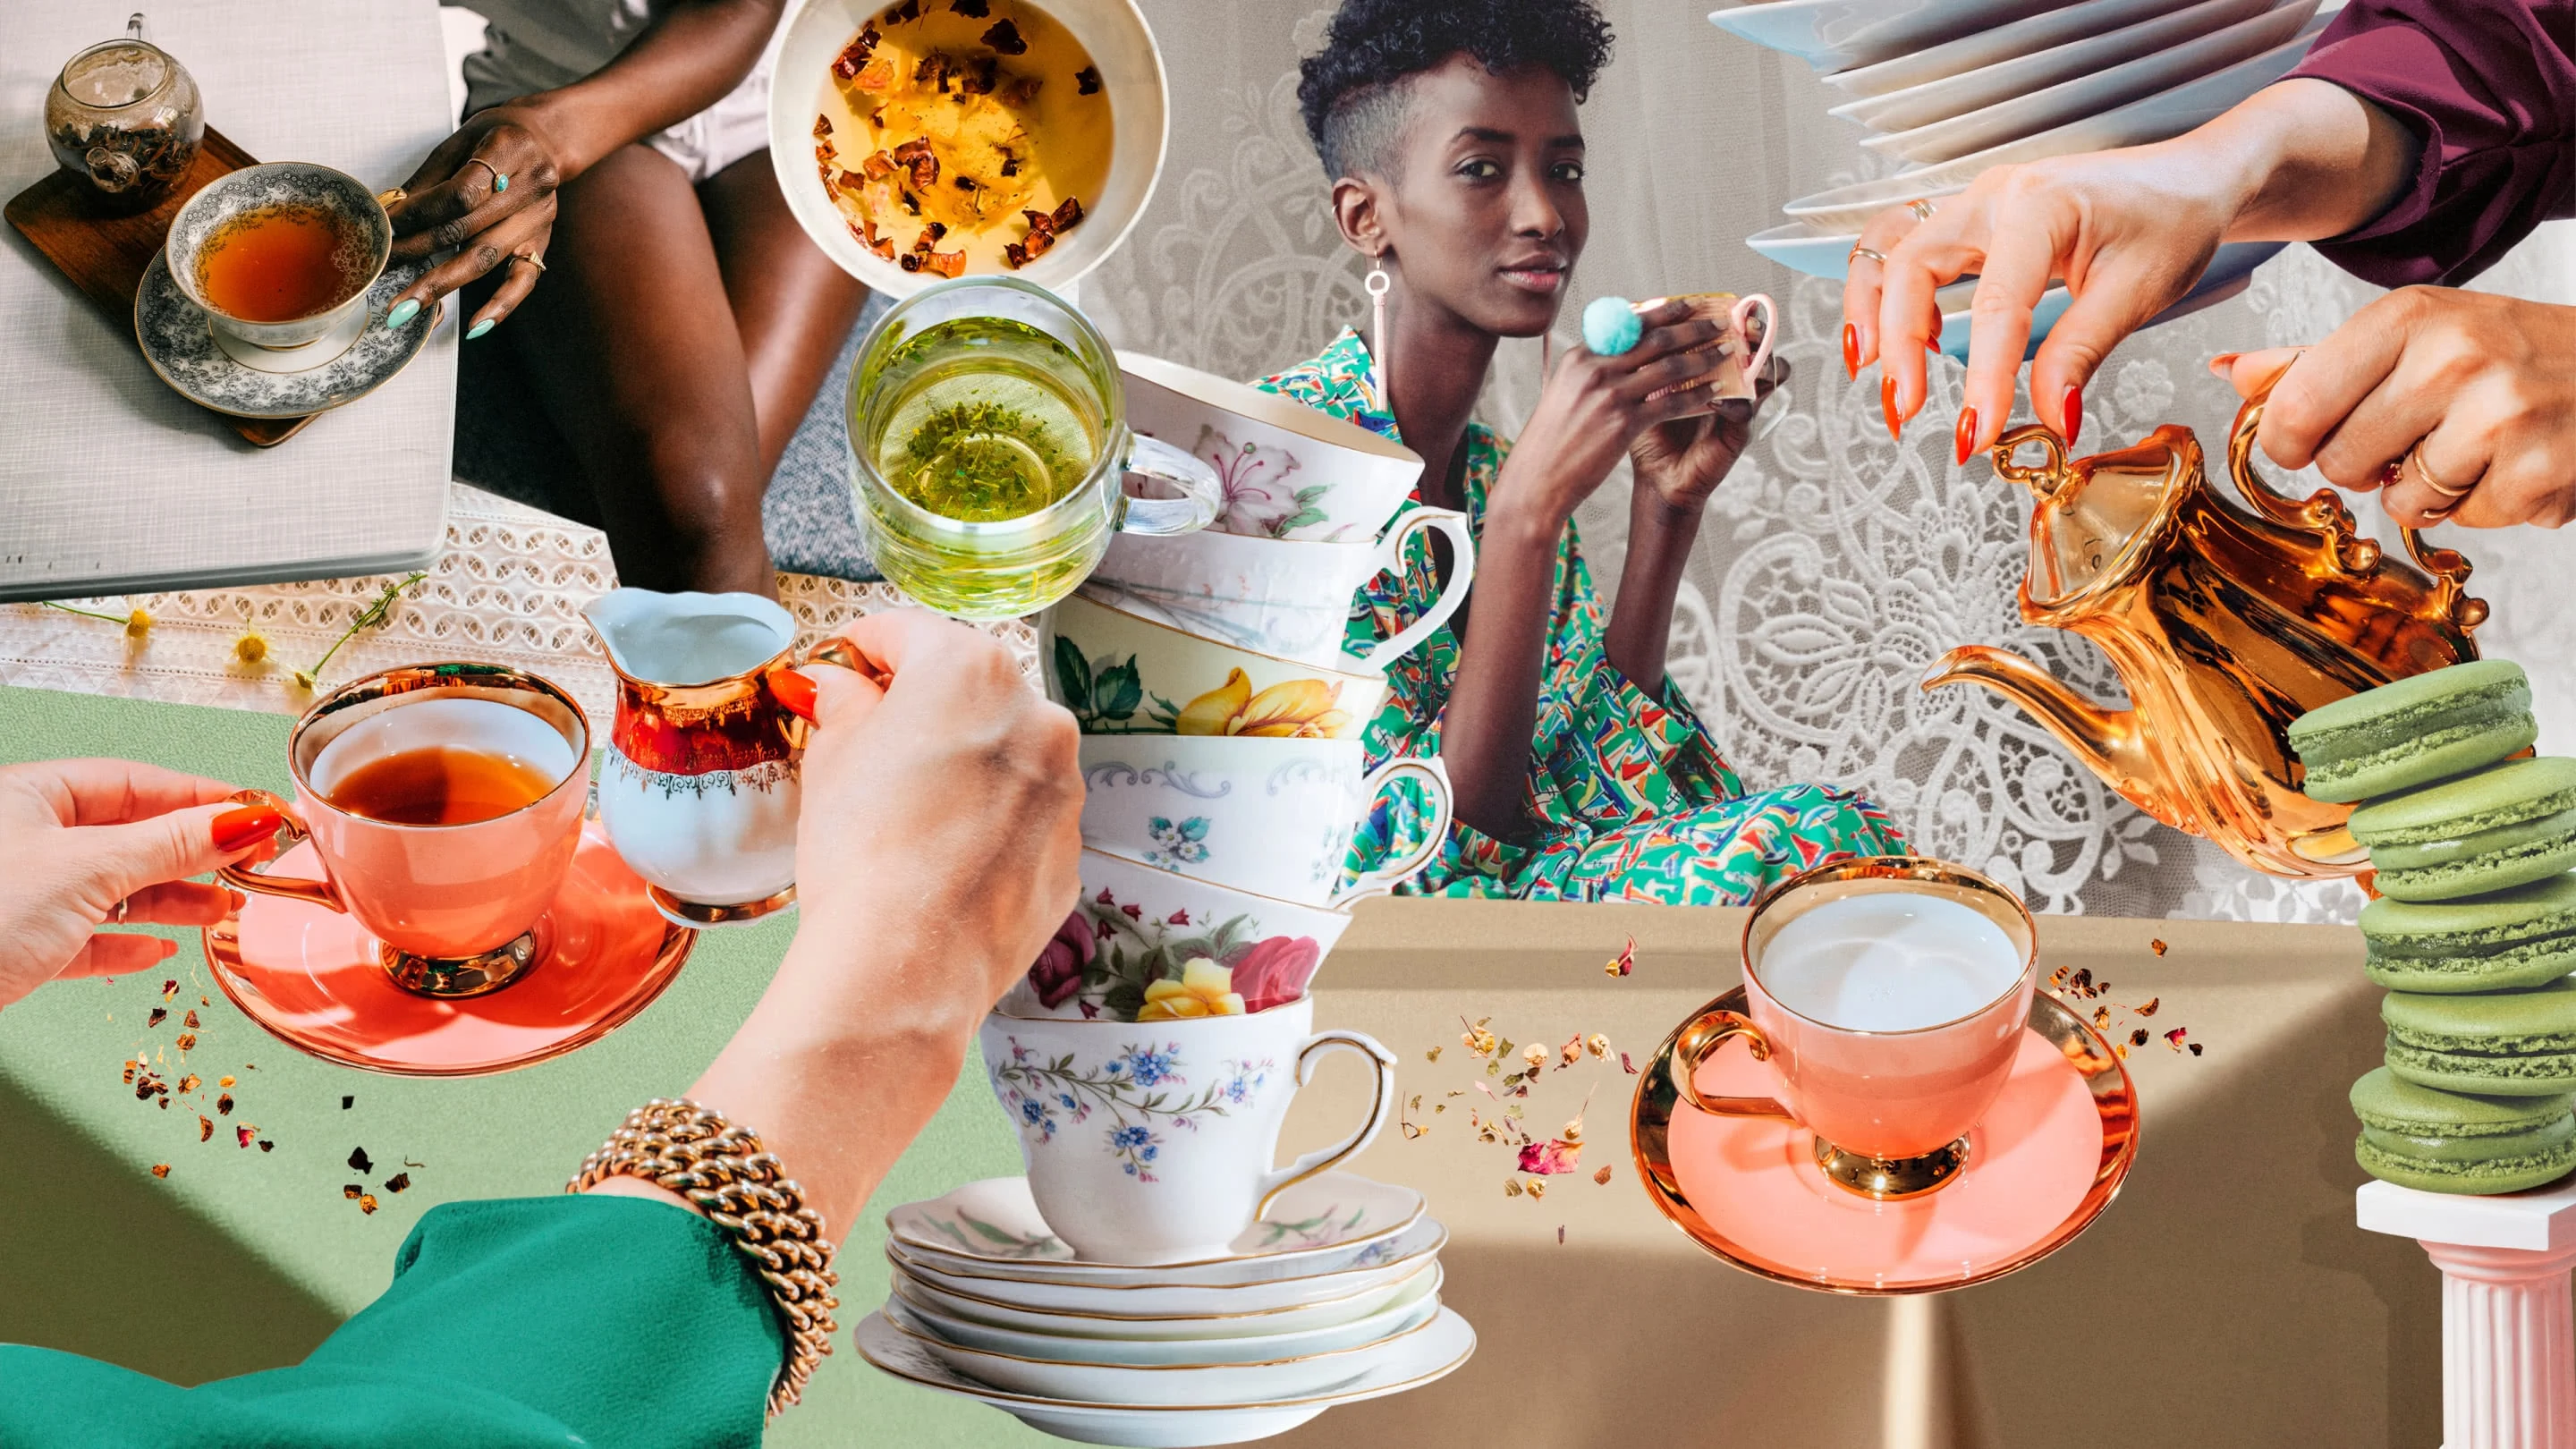 Eine bunte Collage mit gestapelten antiken Teetassen, Tellern und grünen Macarons. Verschiedene Hände halten Kännchen über Tassen mit goldgelbem Tee. In der Mitte sitzt eine Schwarze Frau in Grün gekleidet, sie blickt in die Kamera und hält eine goldene Tasse in der Hand.